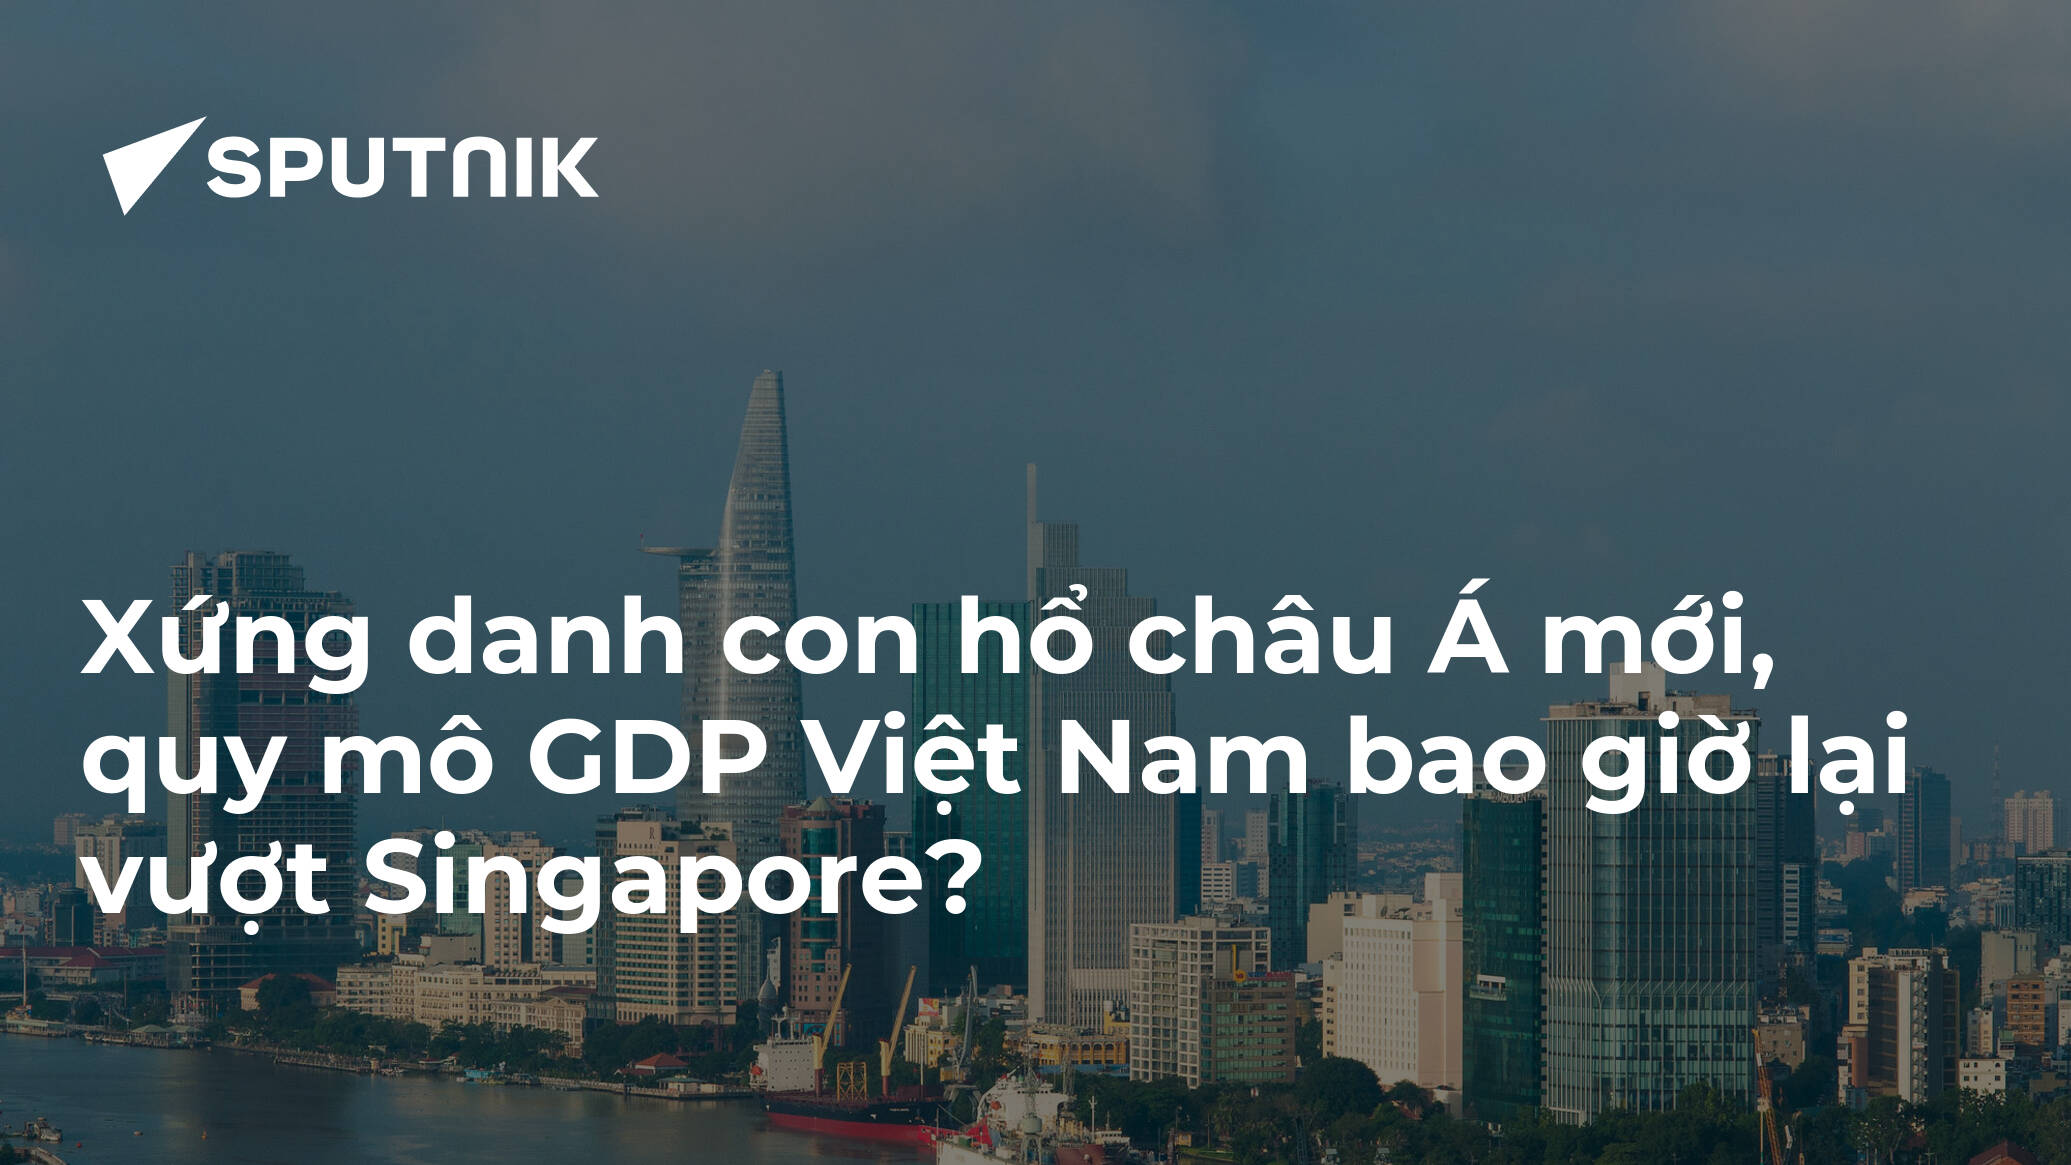 Xứng danh con hổ châu Á mới, quy mô GDP Việt Nam bao giờ lại vượt Singapore?